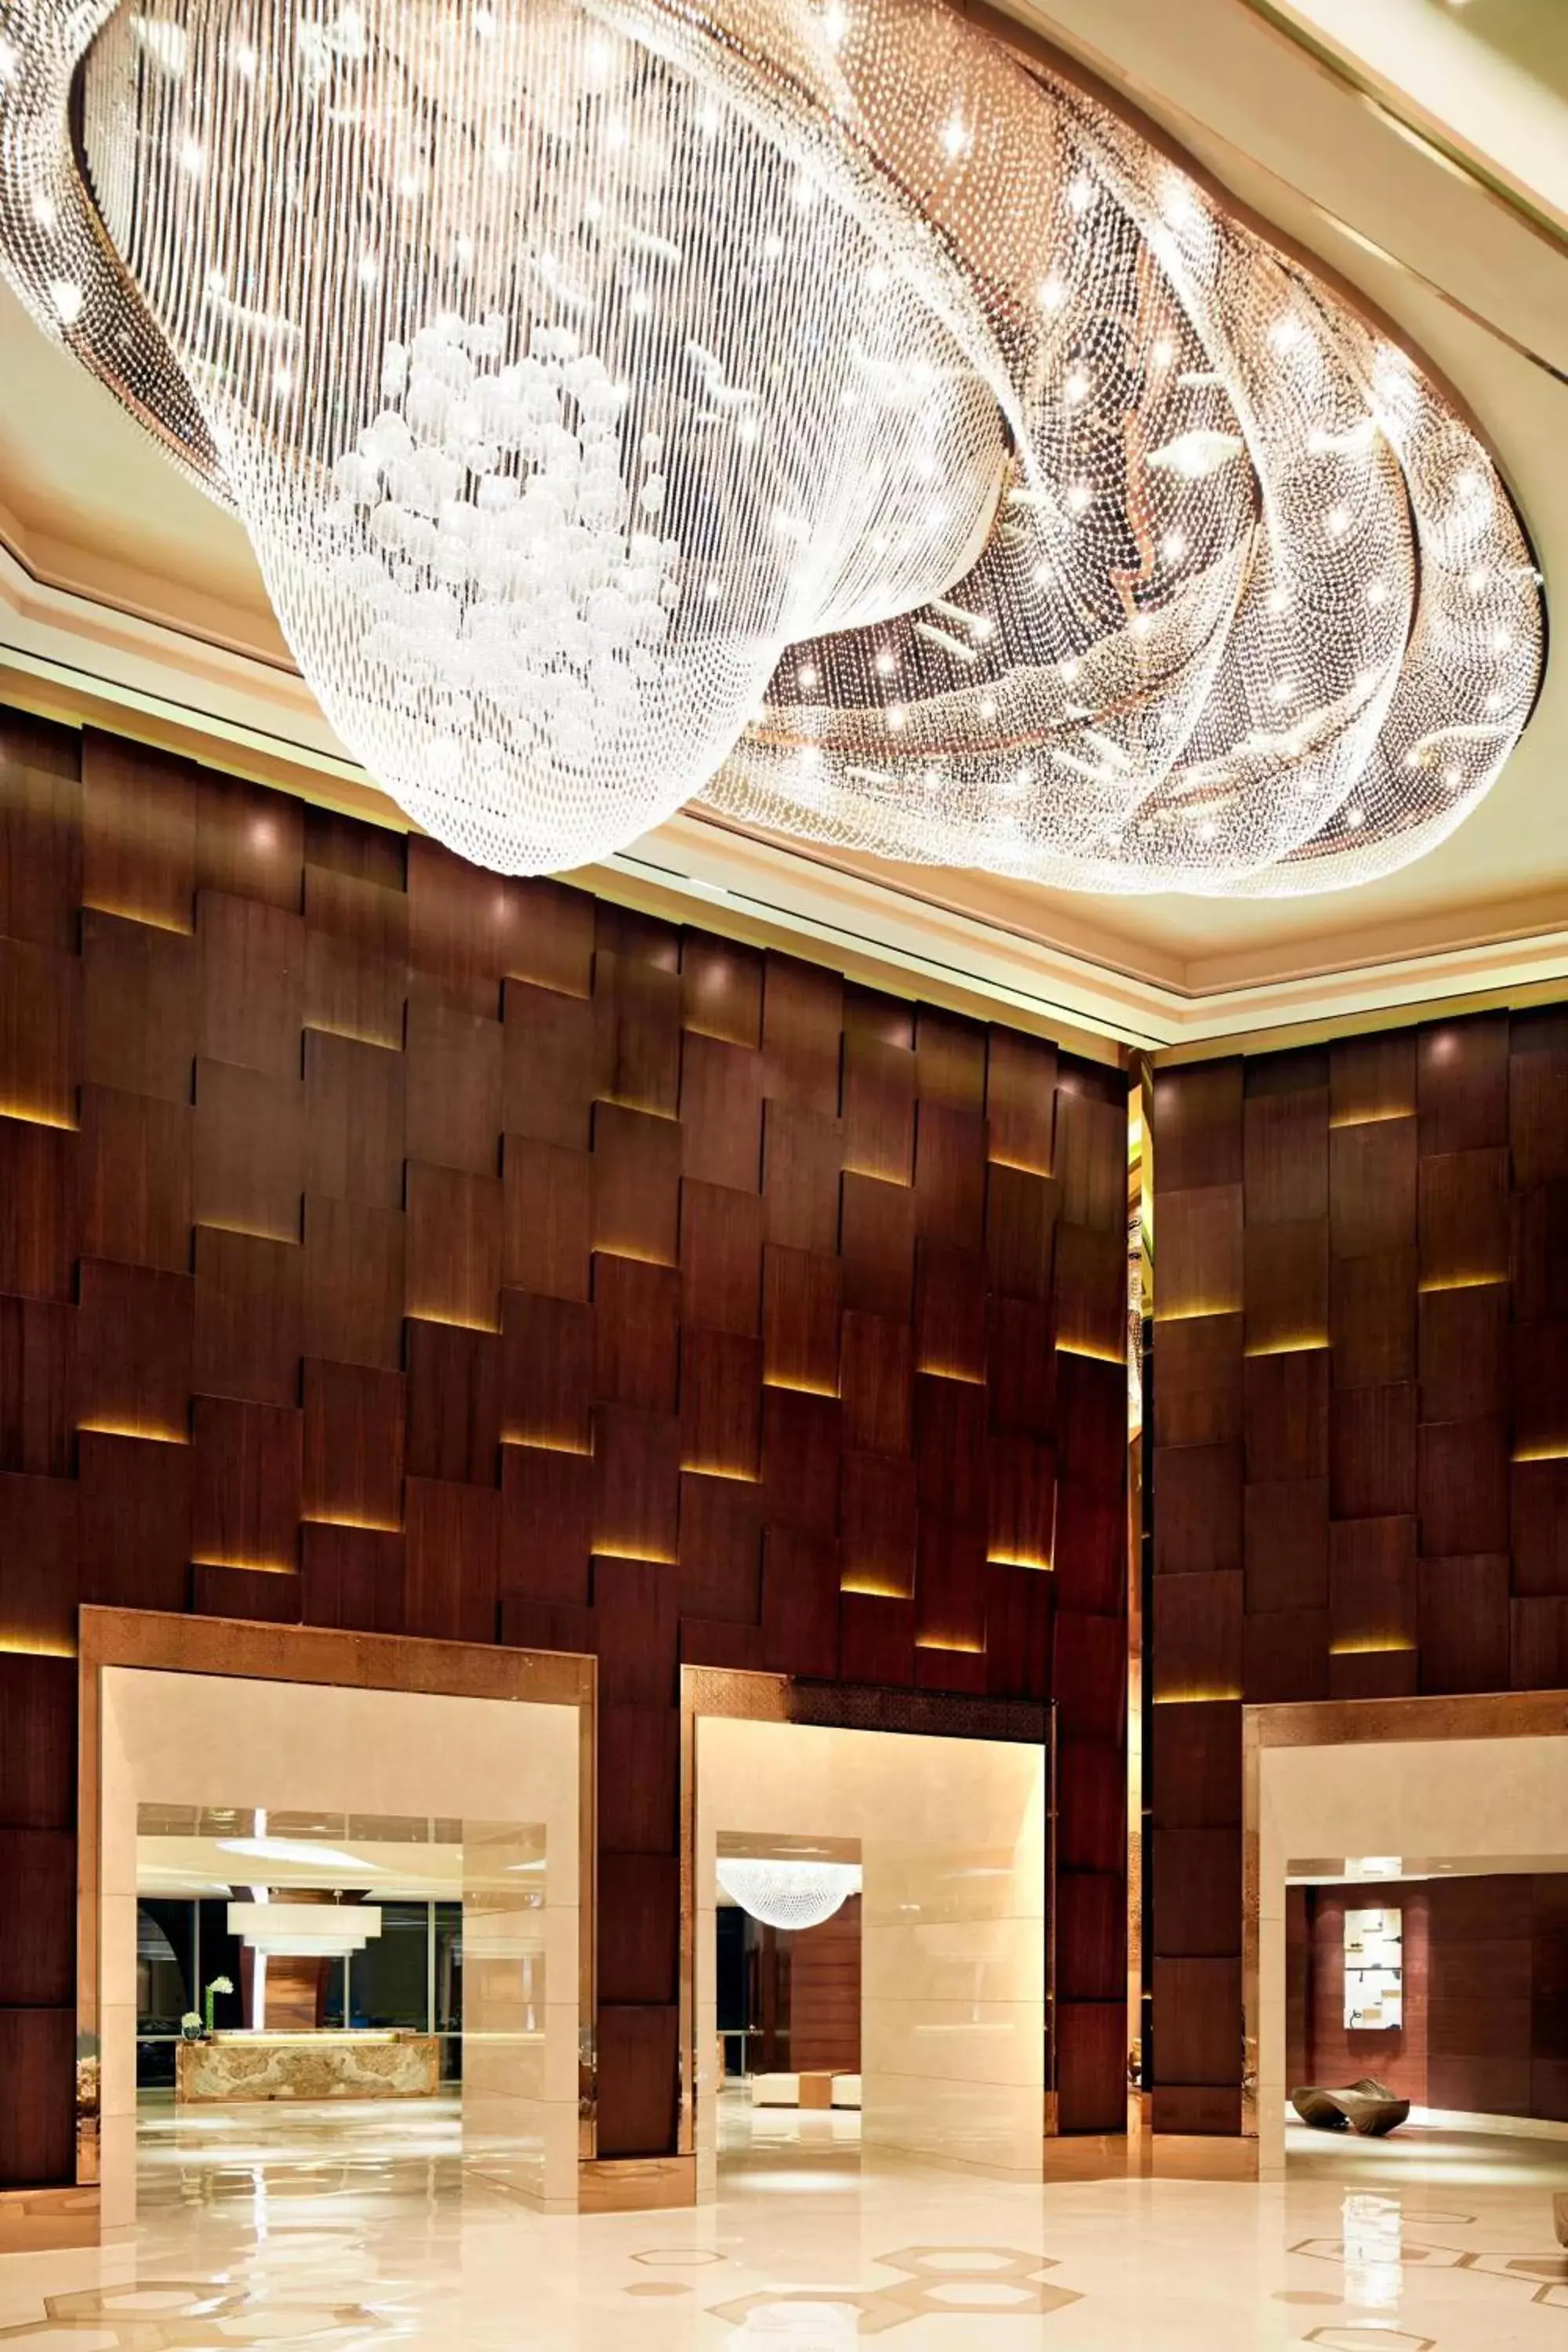 Lobby or reception in JW Marriott Hotel Zhengzhou